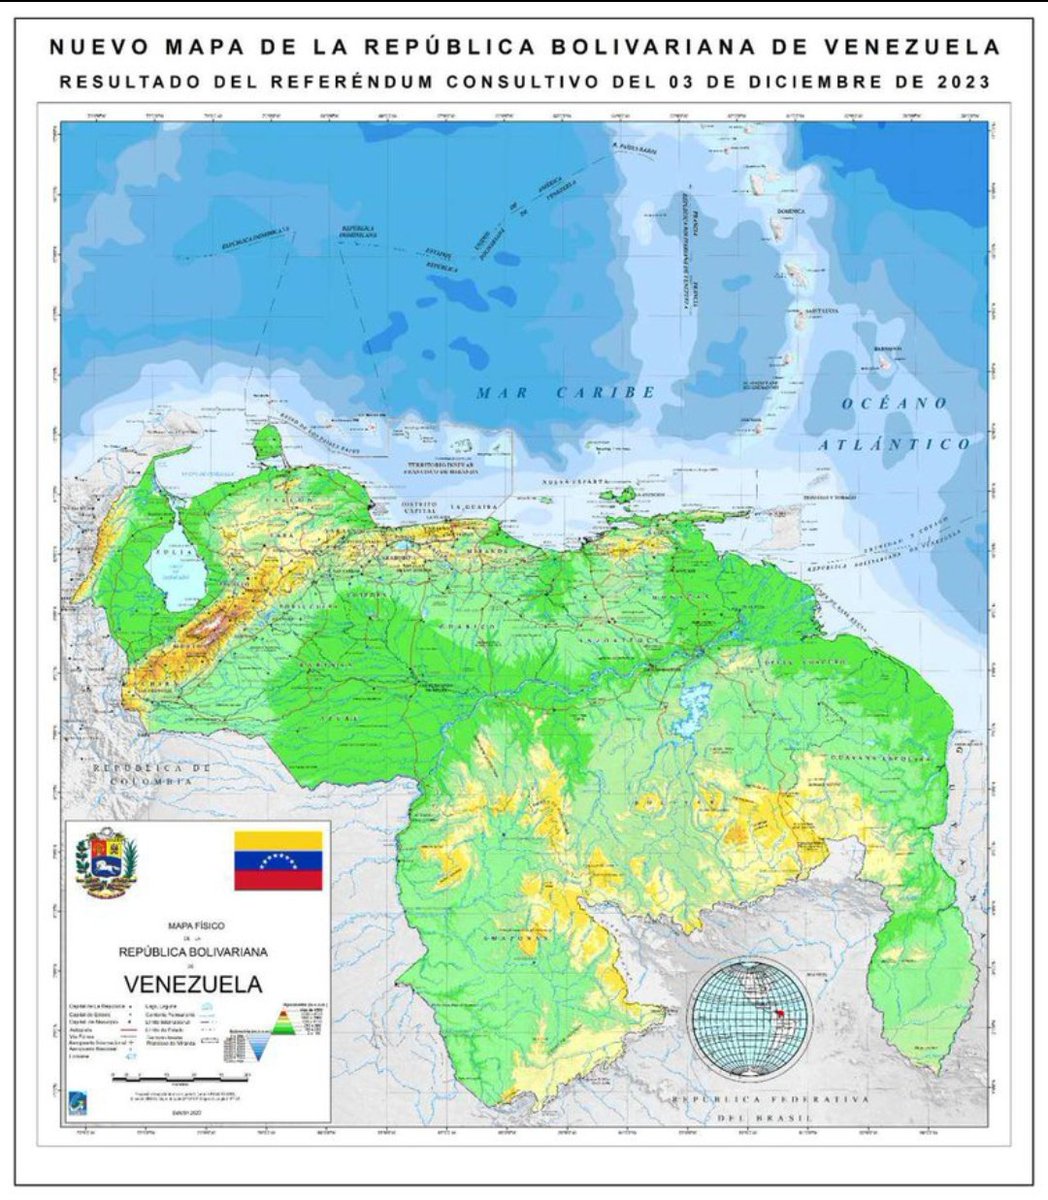 #5Dic || Nuevo mapa de la República Bolivariana de Venezuela 🇻🇪, luego del resultado del Referéndum Consultivo del domingo #3Dic 2023. #VenezuelaToda #MapaVenezuela #Venezuela @VillegasPoljak @MaryPemjean @dinorahcruz